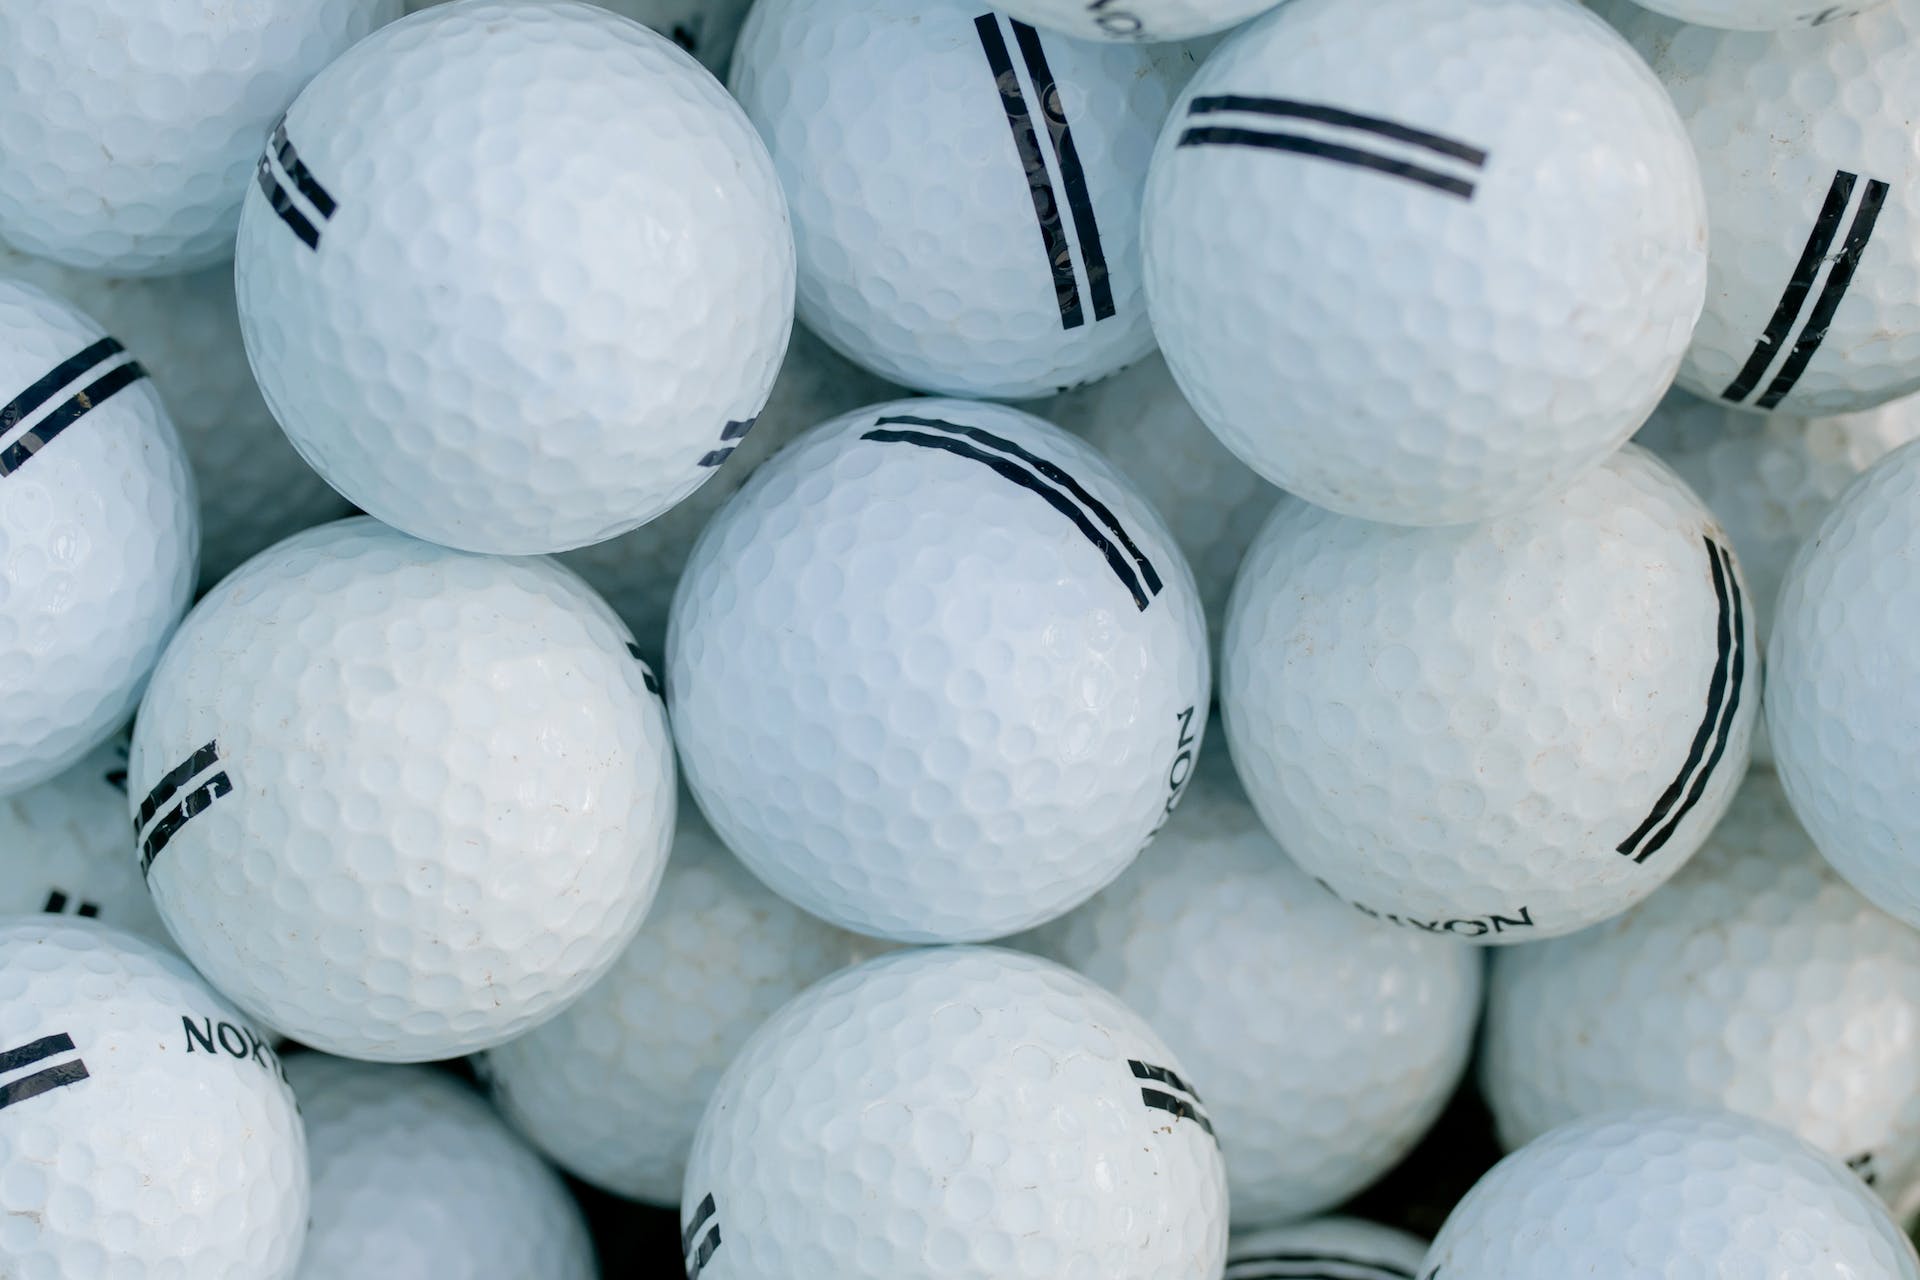 Balles de golf | Source : Pexels